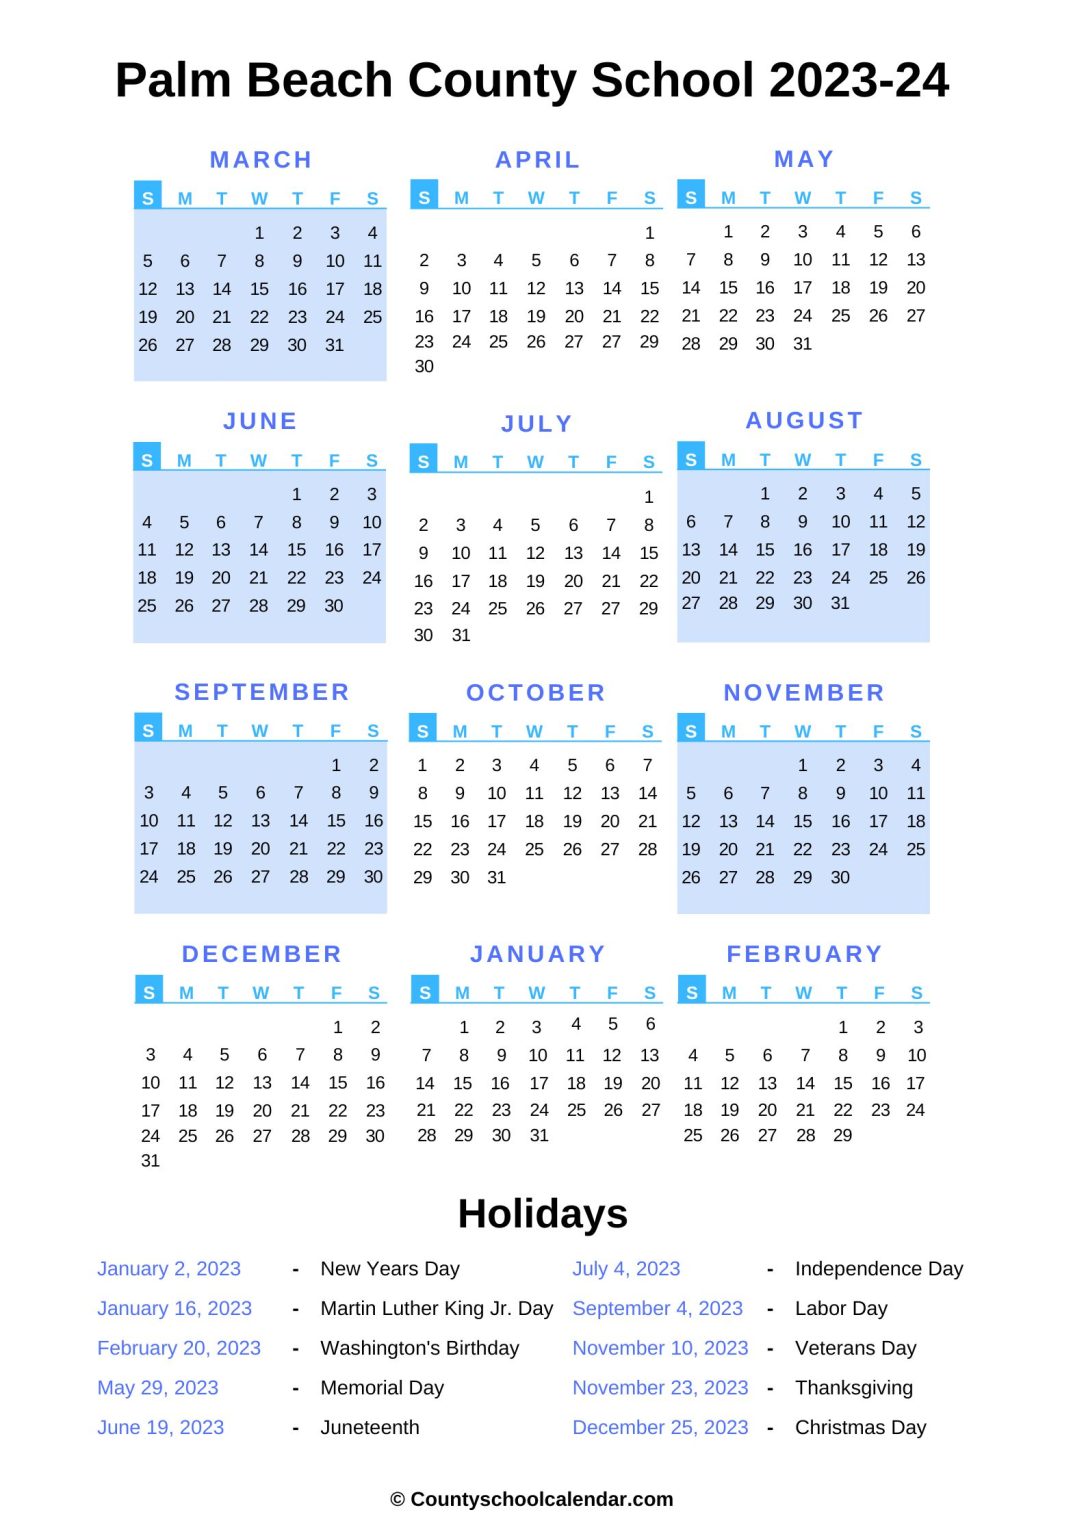 Palm Beach County School Calendar (20222023) with Holidays